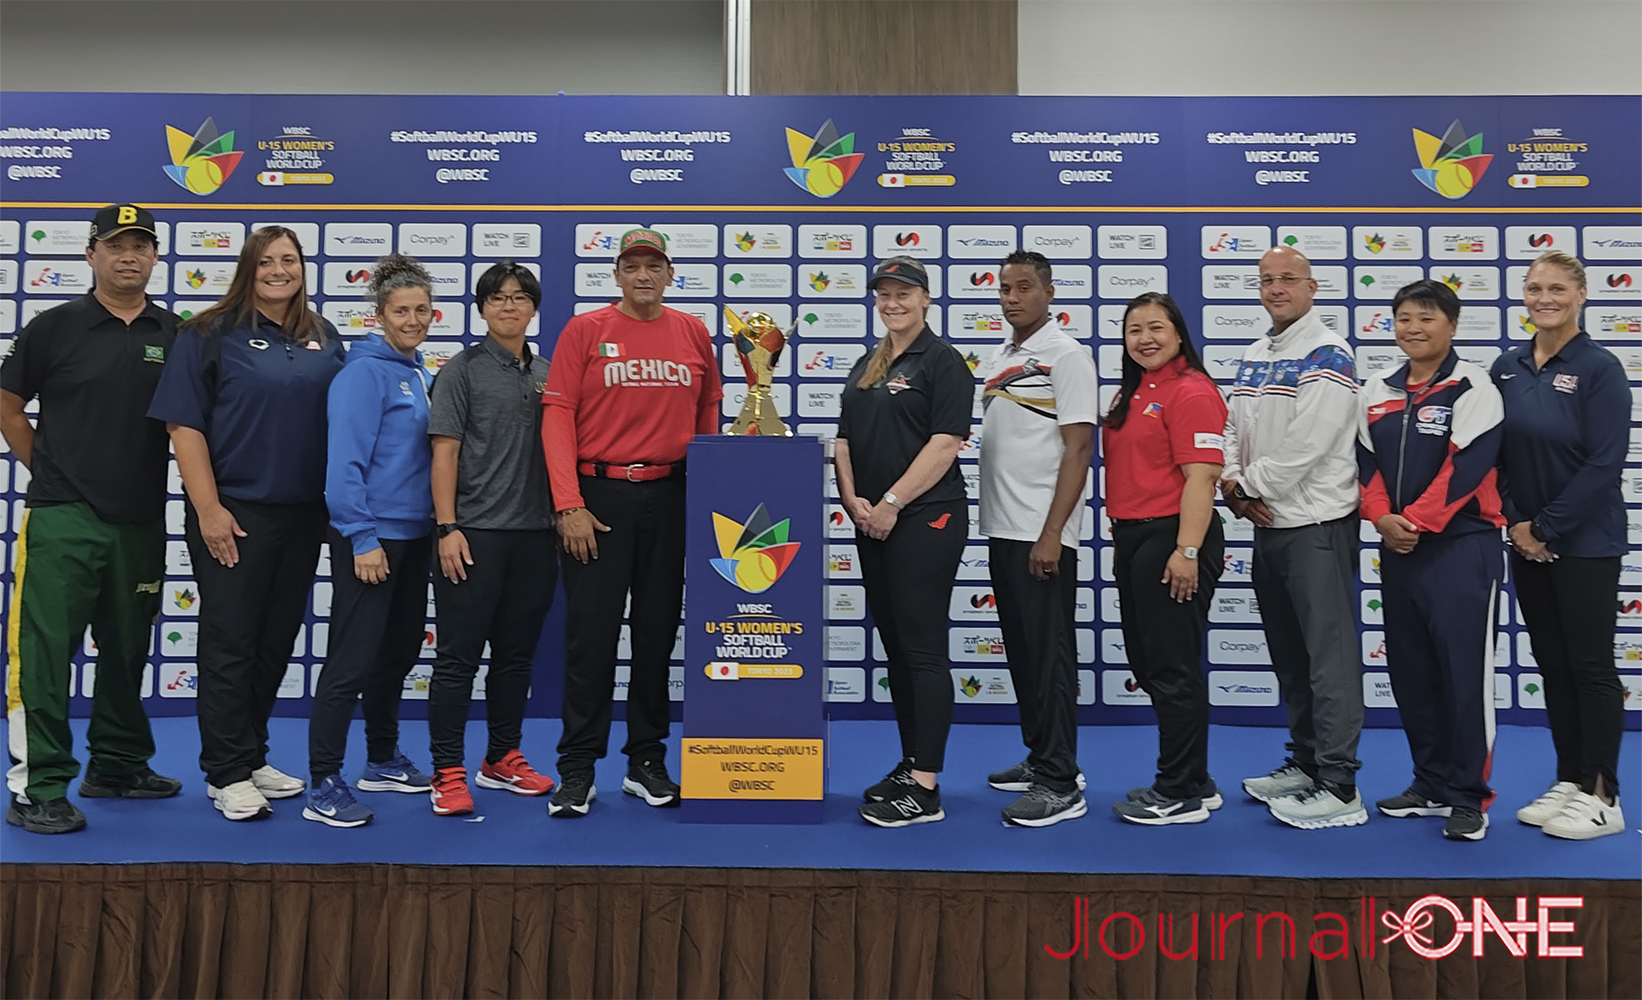 女子ソフトボールU15ワールドカップ| 記者会見に参加した11カ国のヘッドコーチはトロフィーを中央に笑顔の会見-Journal-ONE撮影